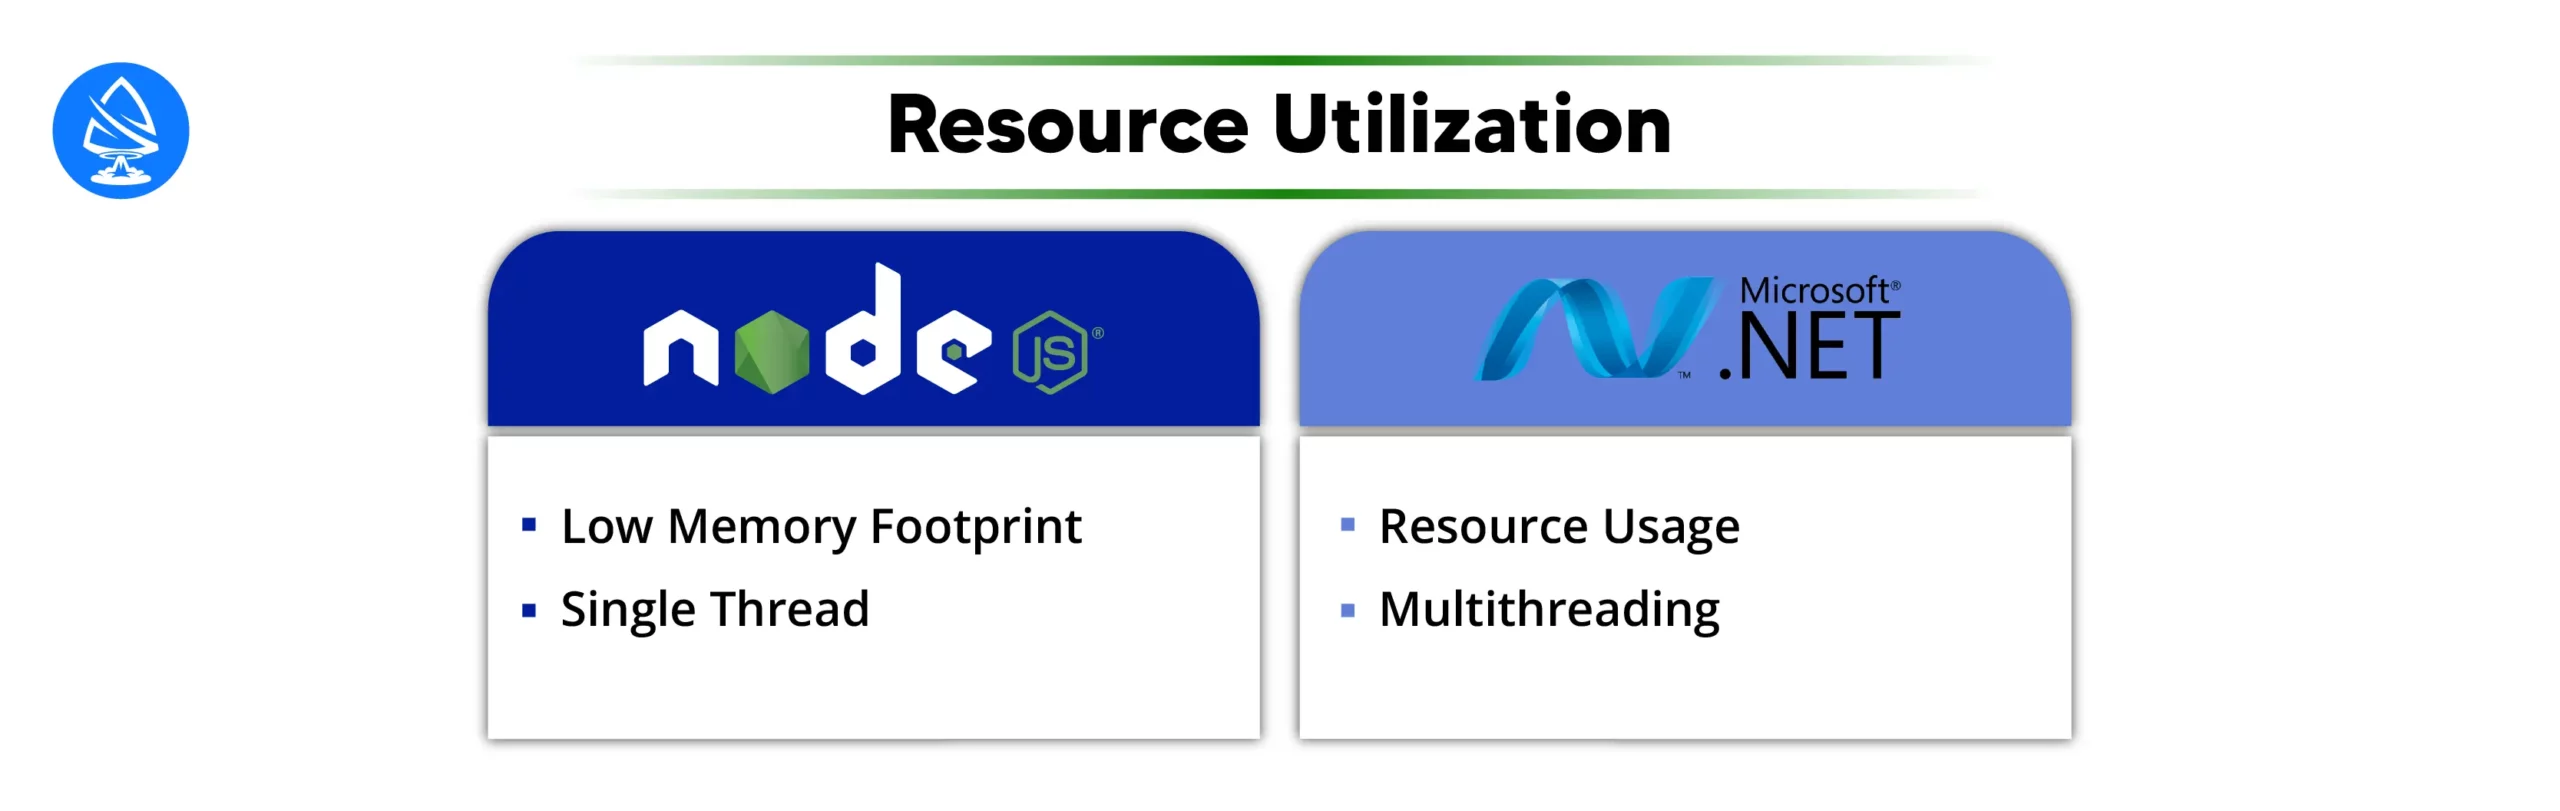 Resource Utilization in Nodejs Vs NET 